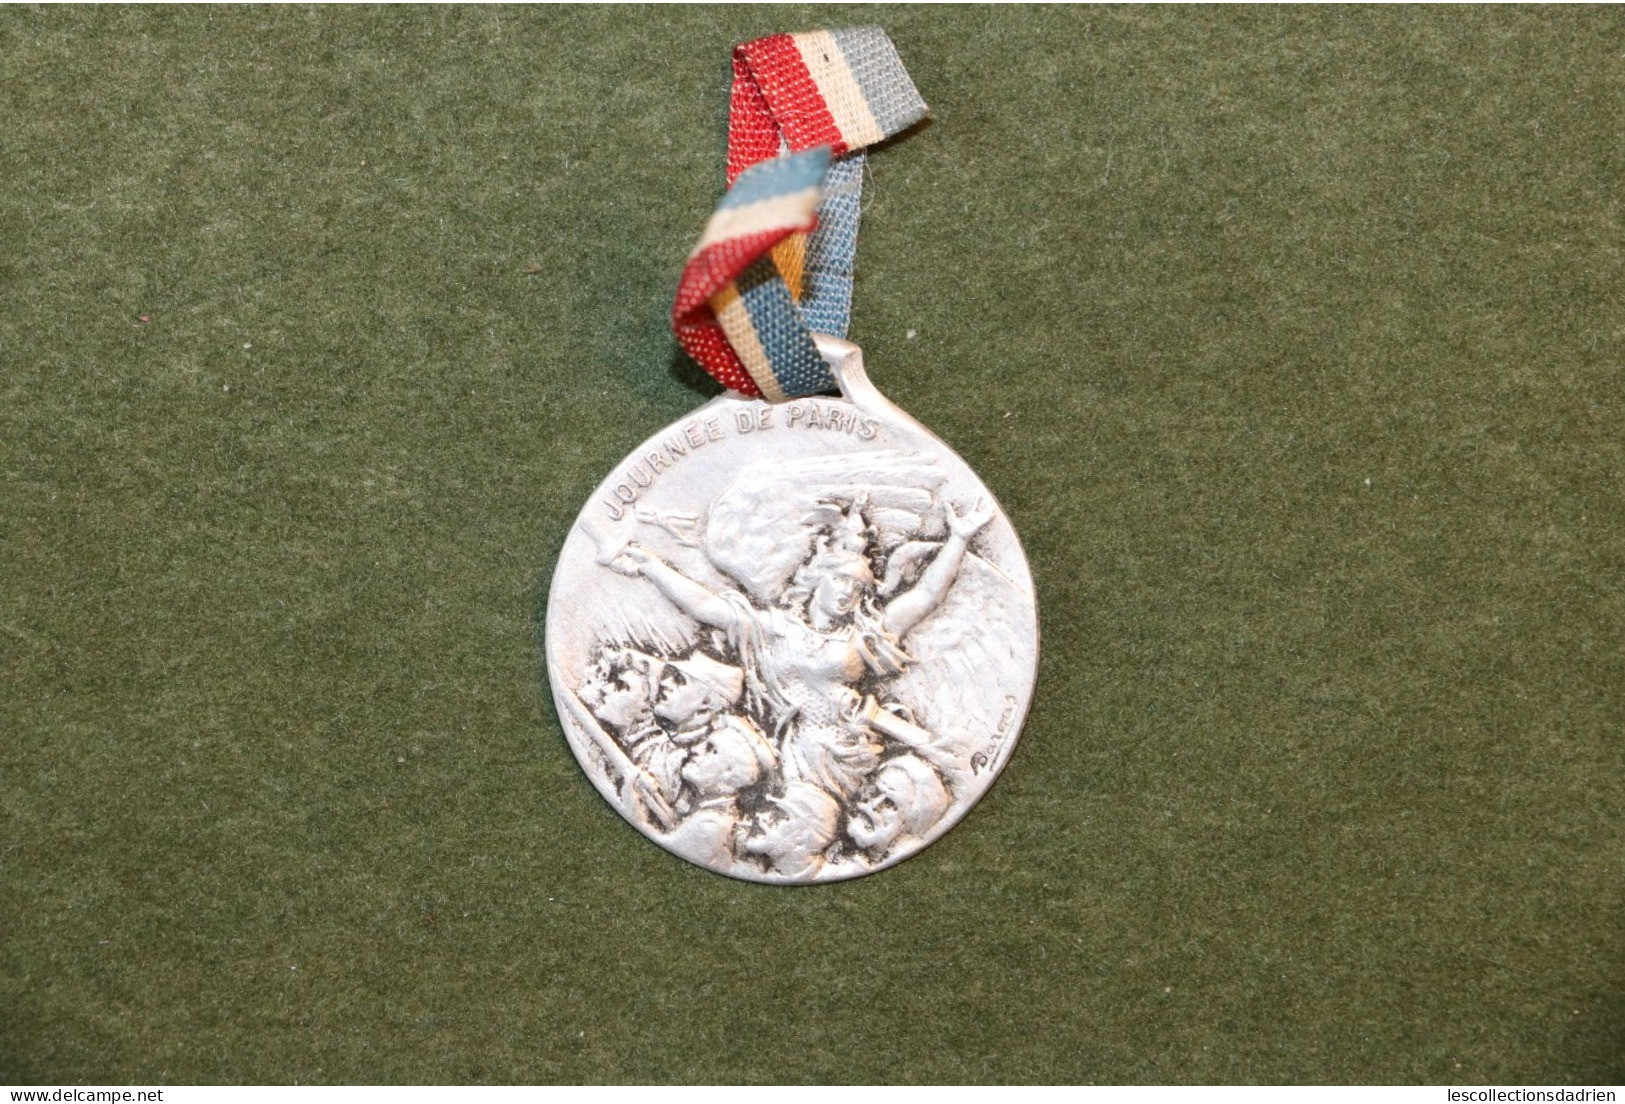 Médaille Française Journée De Paris14-18 - French Medal WWI Médaillette Journée - Bargas - Frankreich